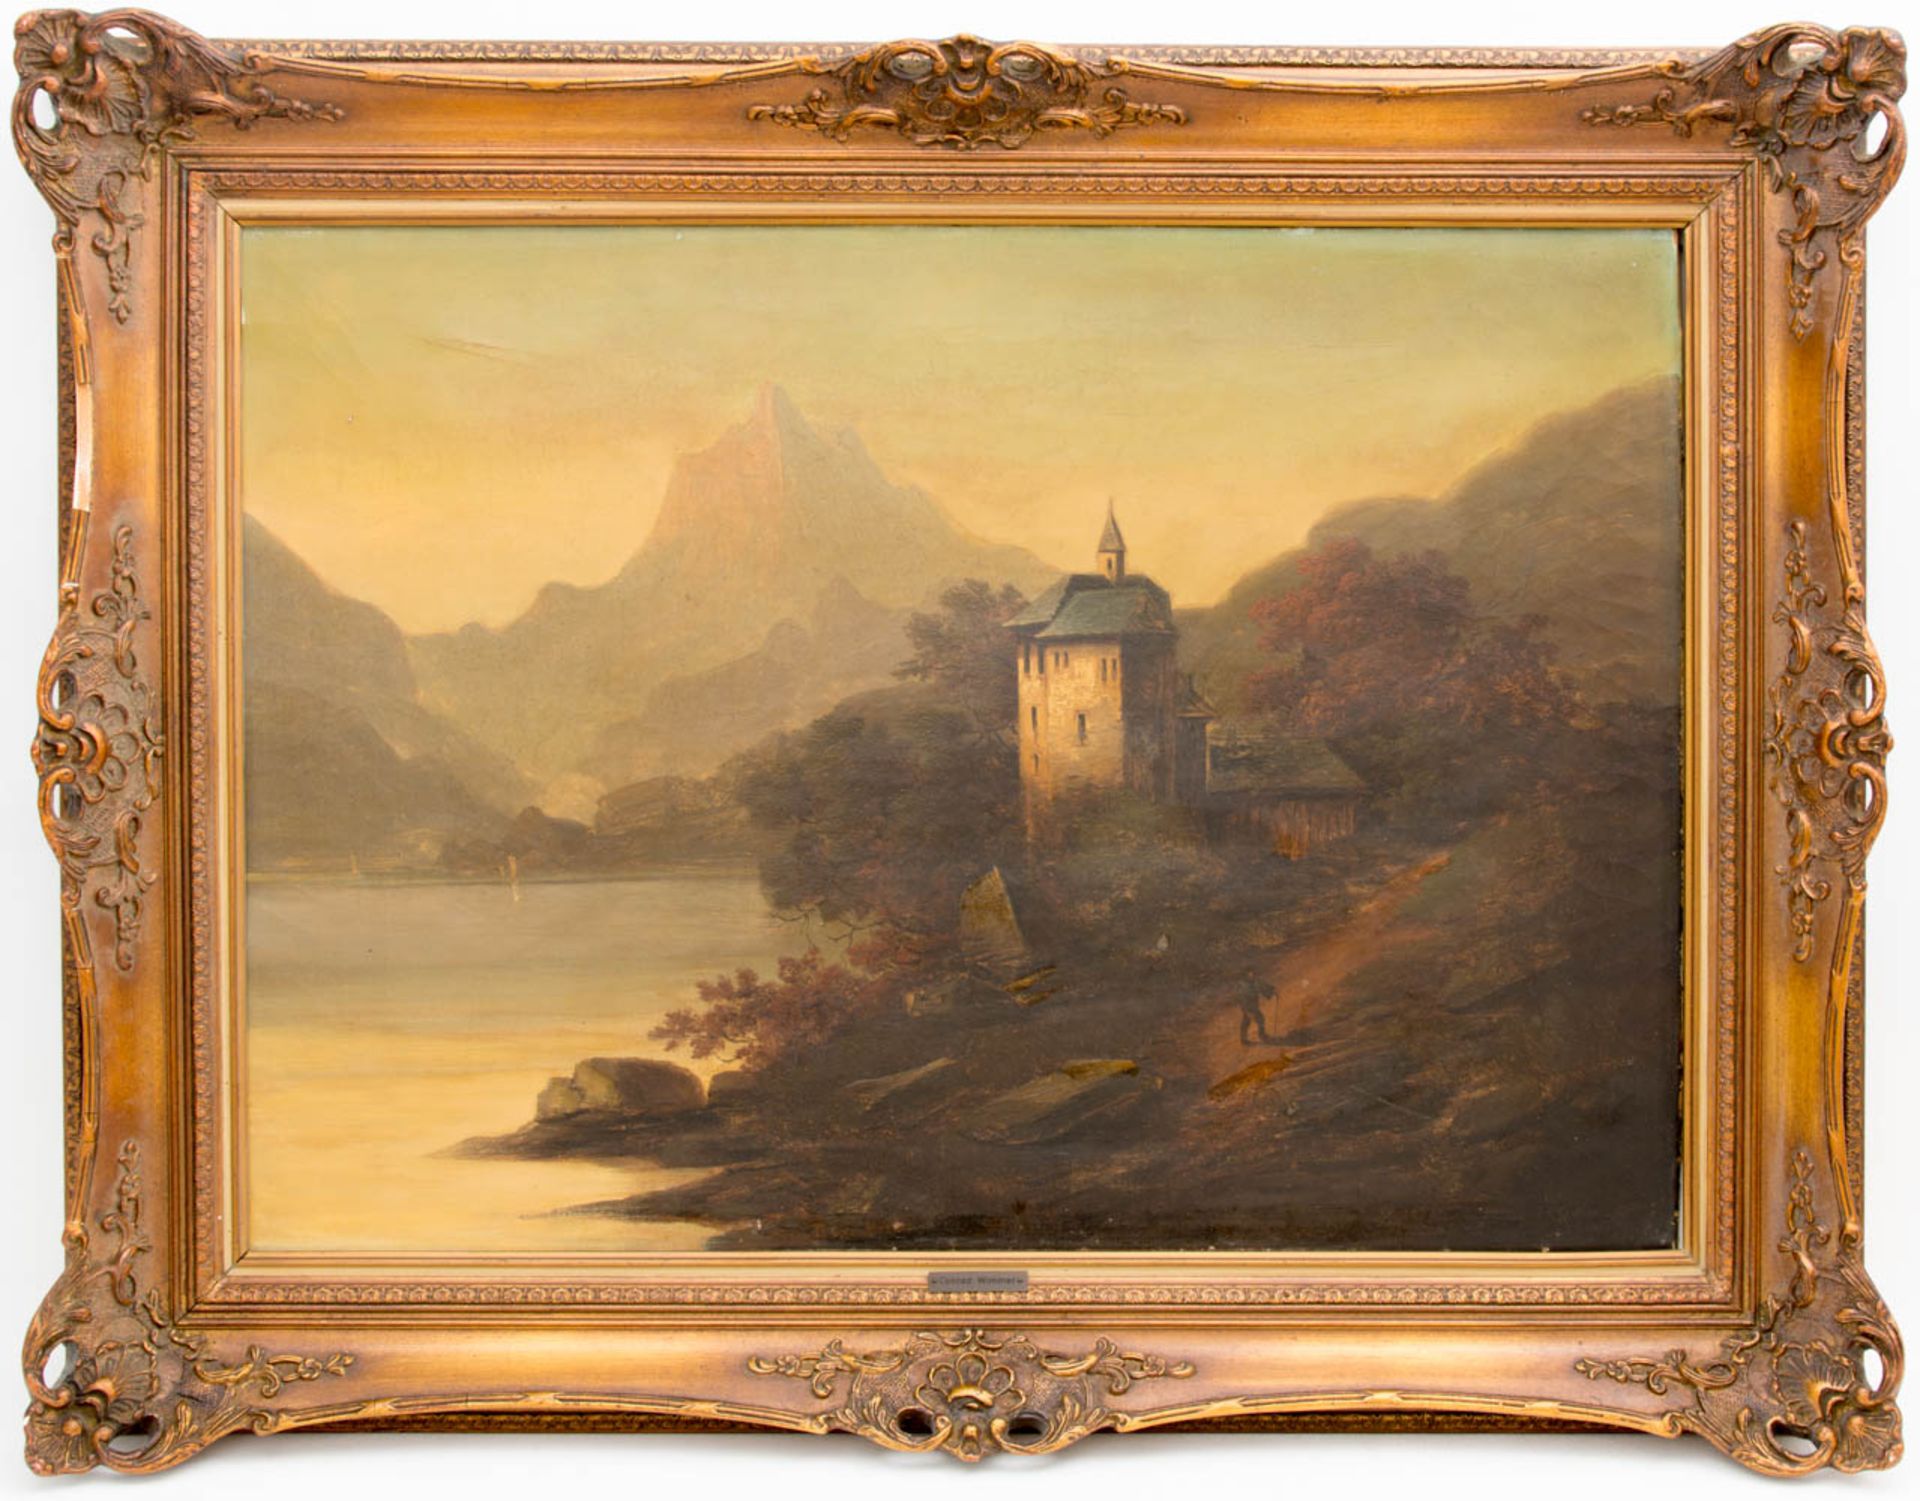 Conrad Wimmer, Landschaftsansicht mit Burg, Öl auf Leinwand, 19.Jh.Conrad Wimmer (184